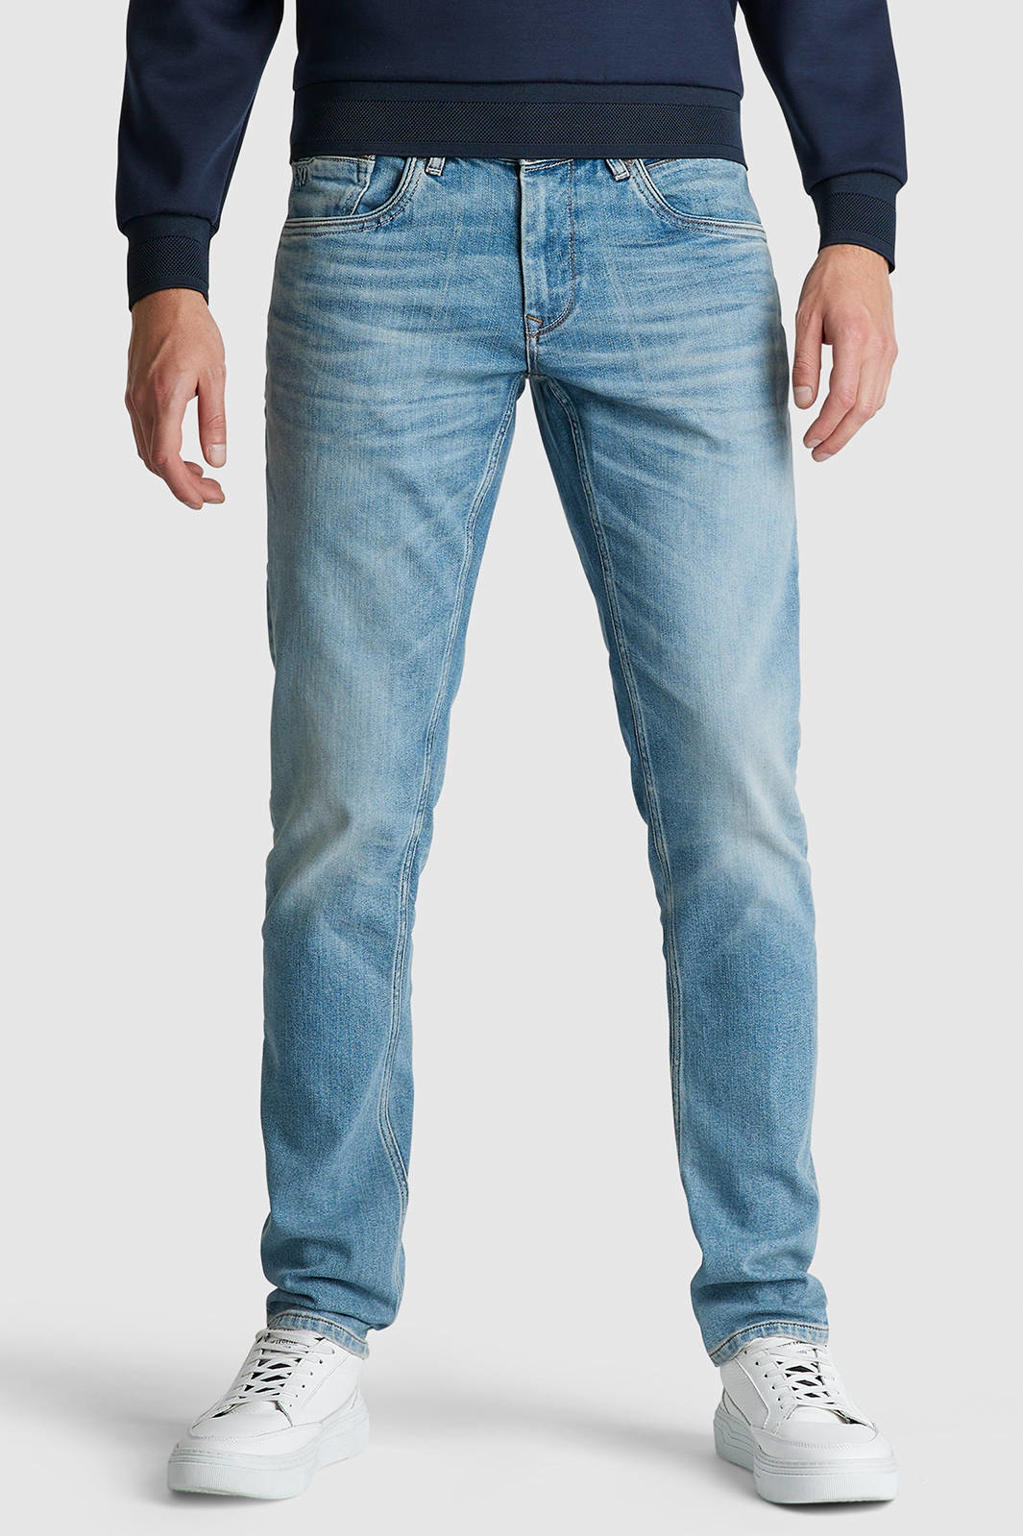 PME Legend slim fit jeans XV light mid denim